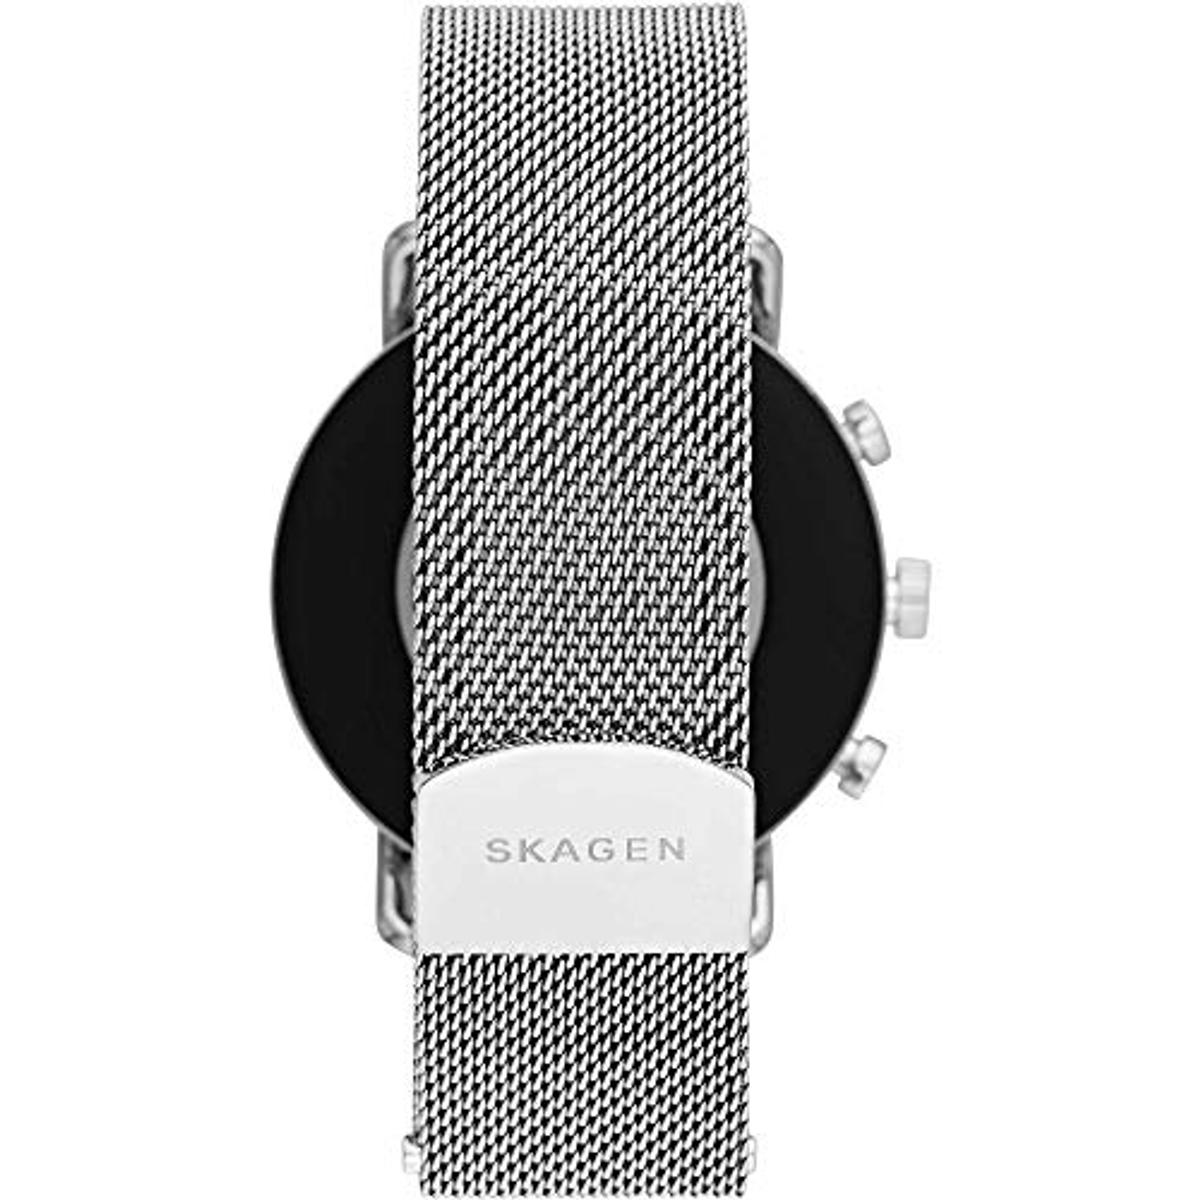 SKAGEN Smartwatch Skagen Silver/Black 185 Edelstahl Smartwatch silicone, SKT5102 mm